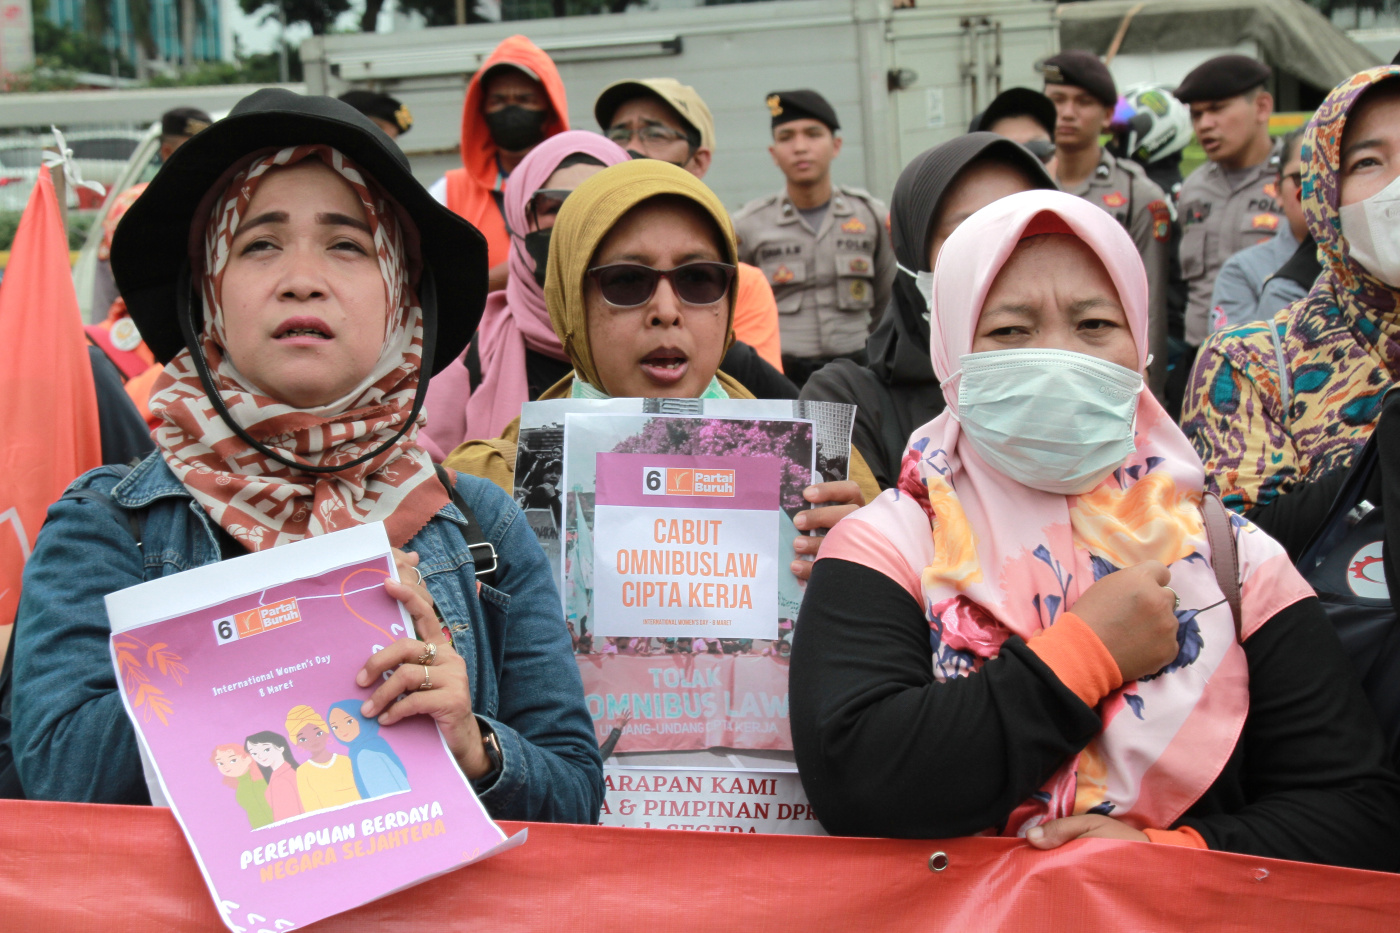 Ratusan buruh perempuan dari Partai Buruh dan serikat buruh FSPMI gelar aksi demo di DPR (Ashar/SinPo.id)